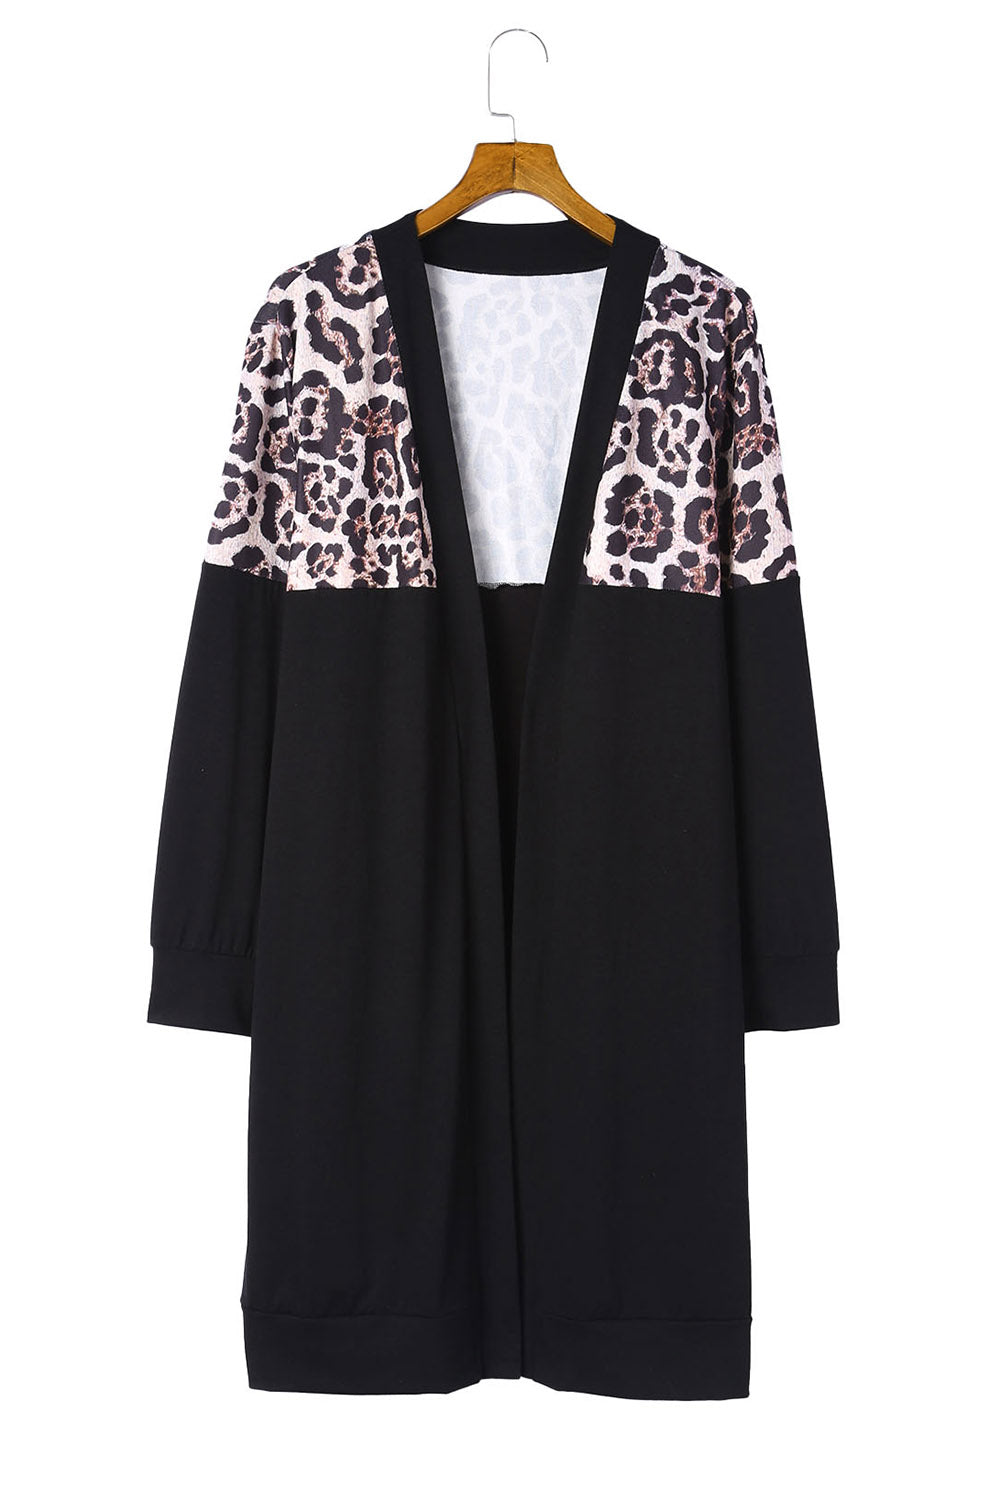 Black Leopard Detail Plus Size Cardigan